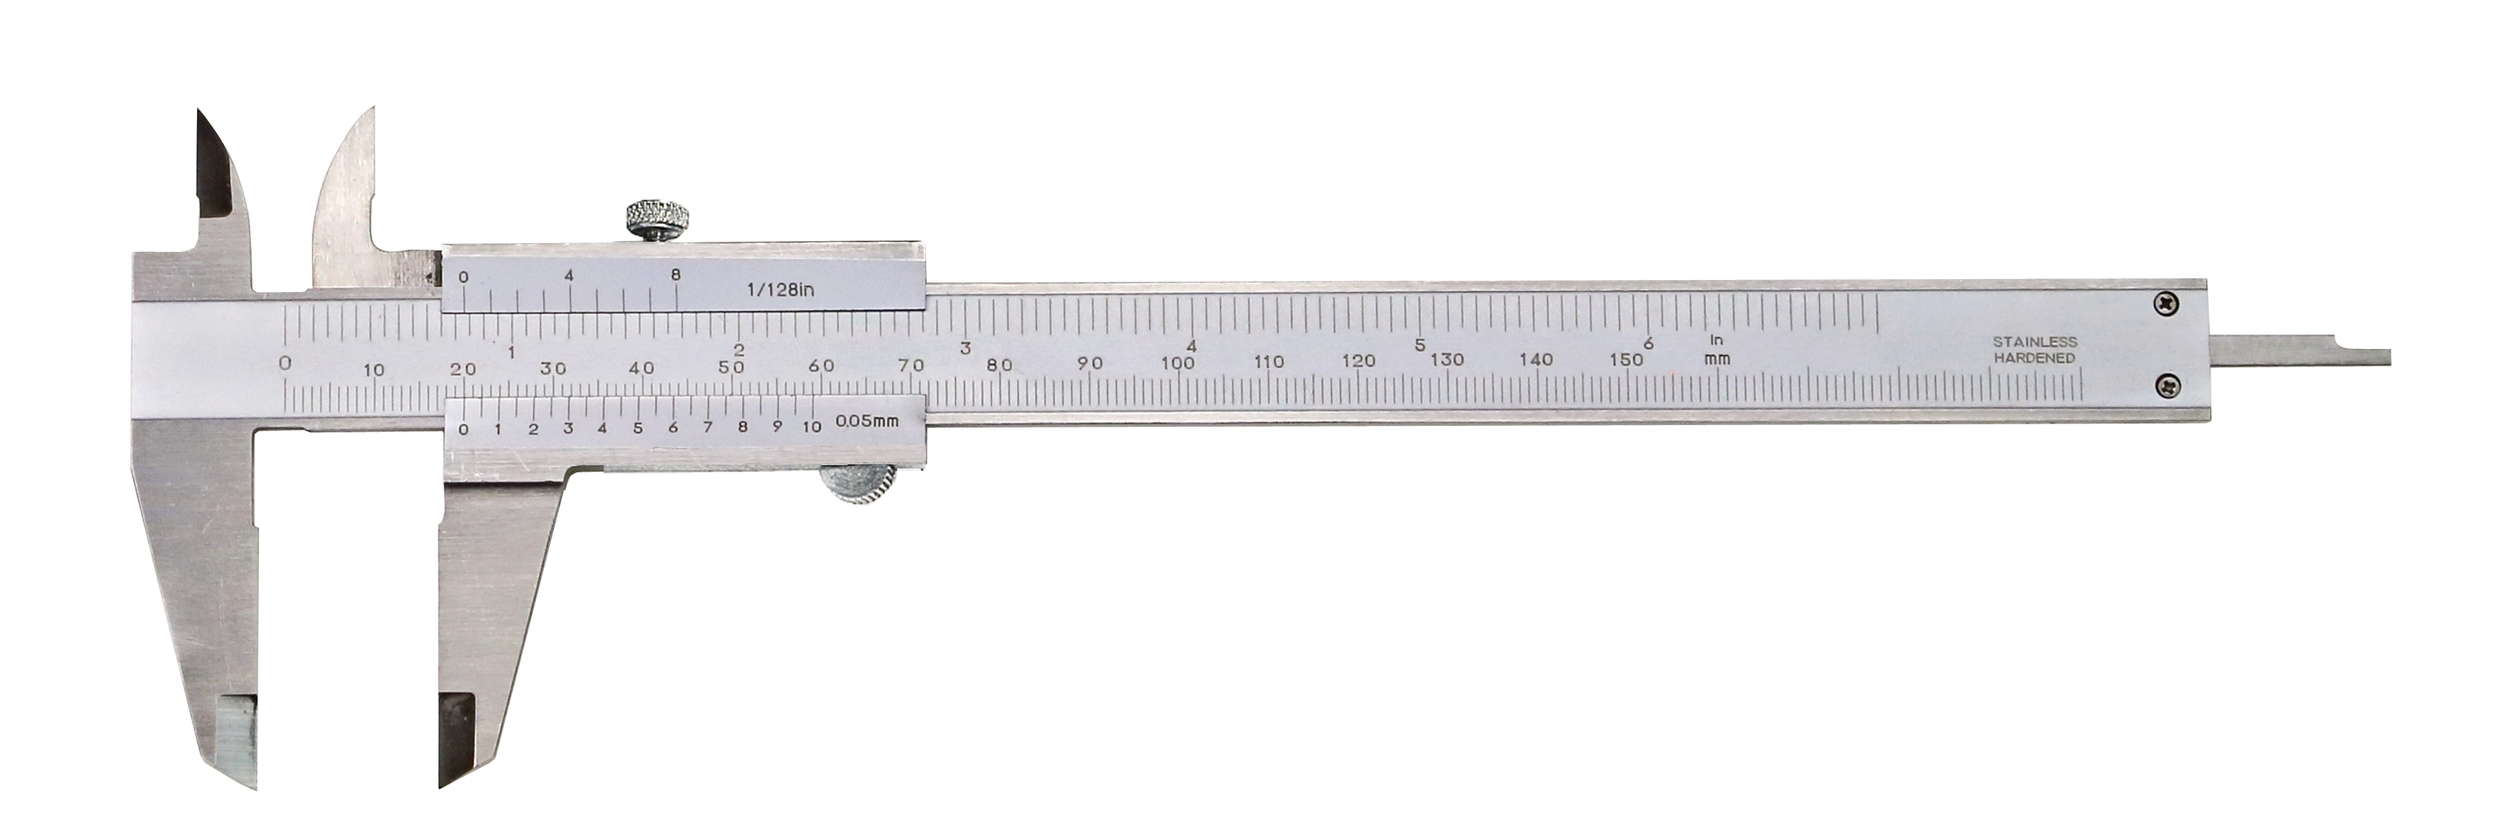 Taschen-Messschieber 150 x 0,05 mm DIN 862 INOX Feststellschraube mit Kalibrierschein